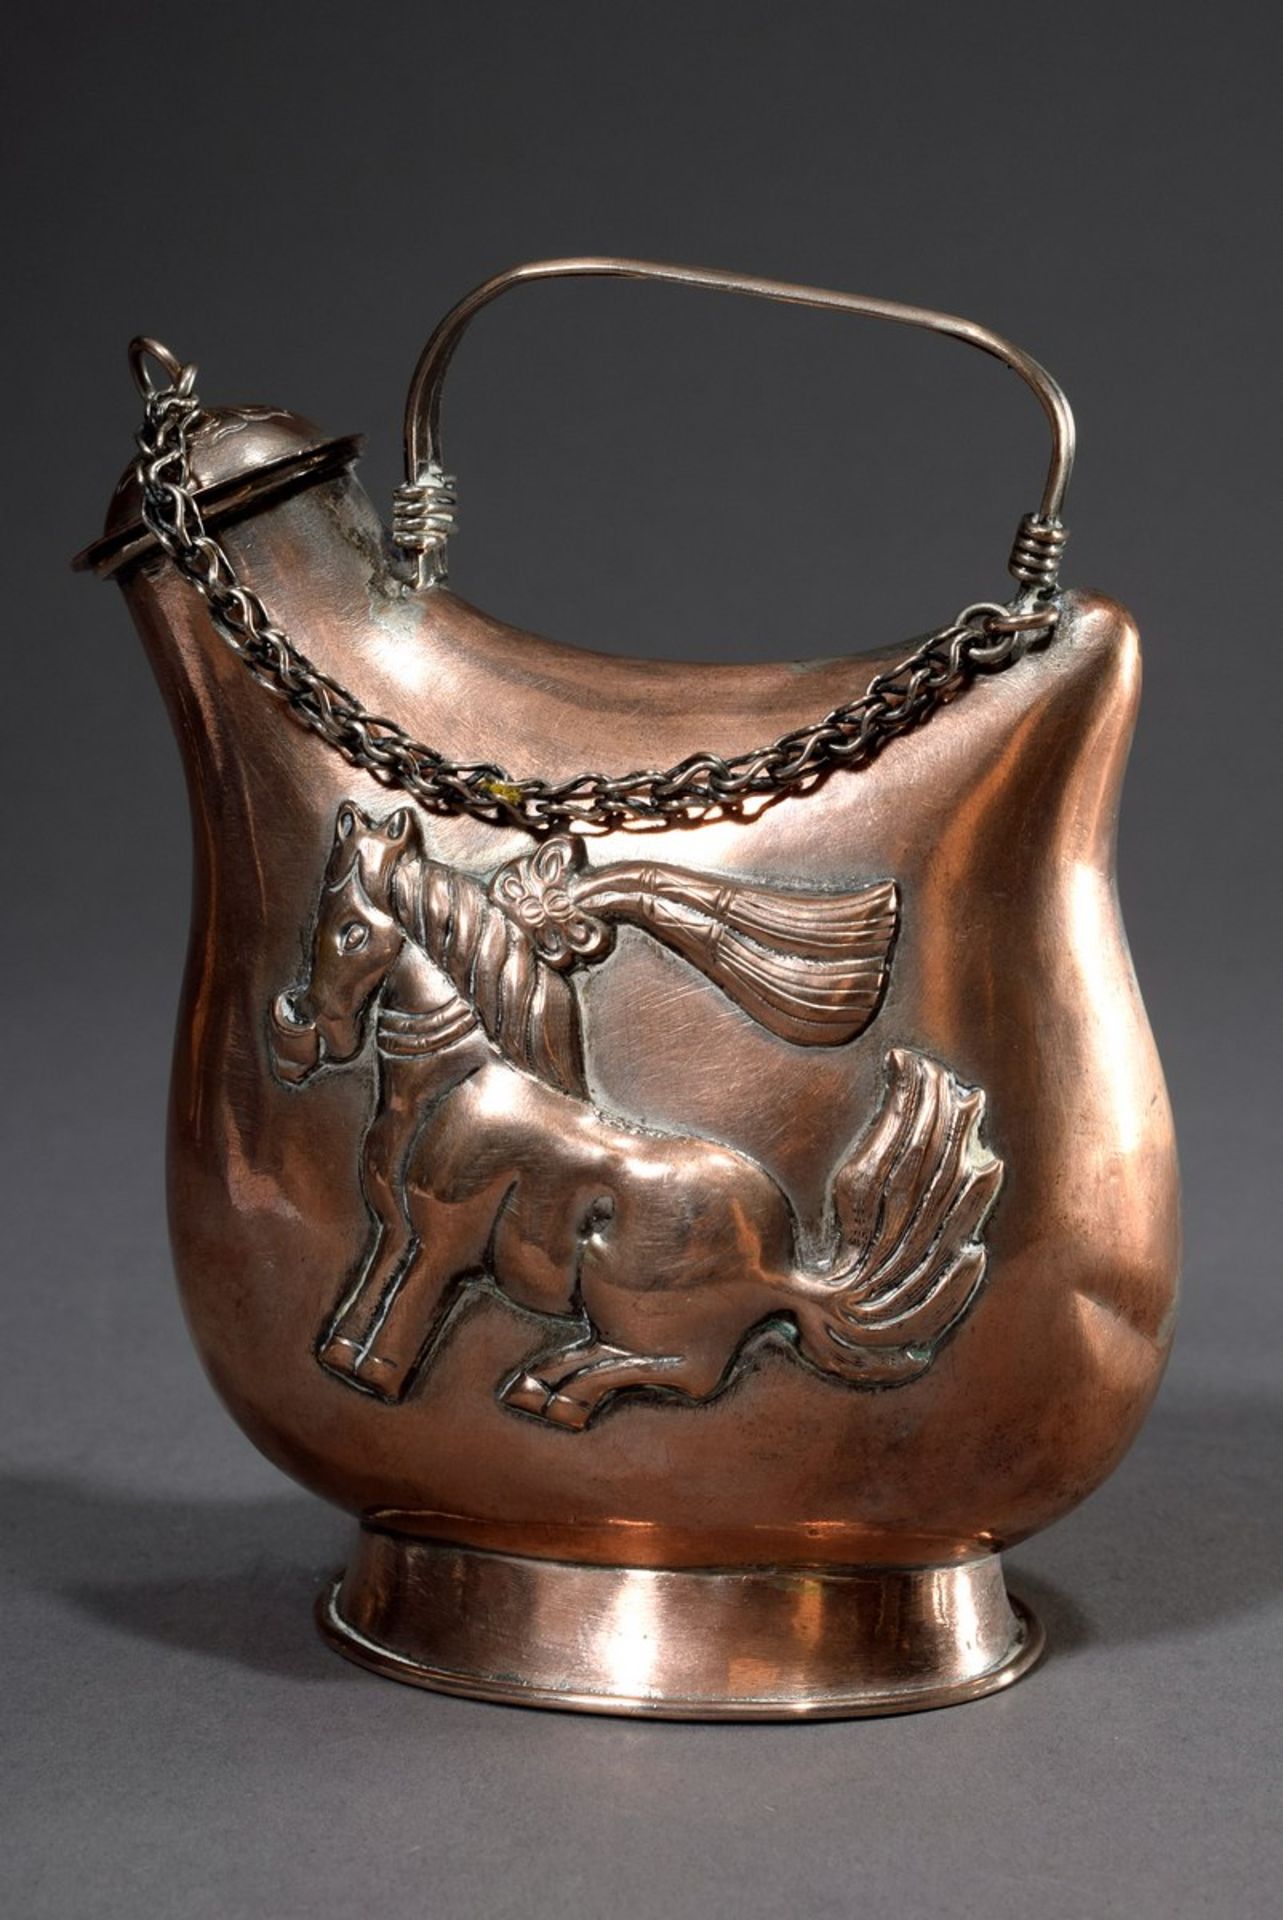 Weinkanne in Form einer Pilgerflasche "pinanghu" mit getriebenem Dekor "Tanzendes Pferd" nach Tang - Image 2 of 7